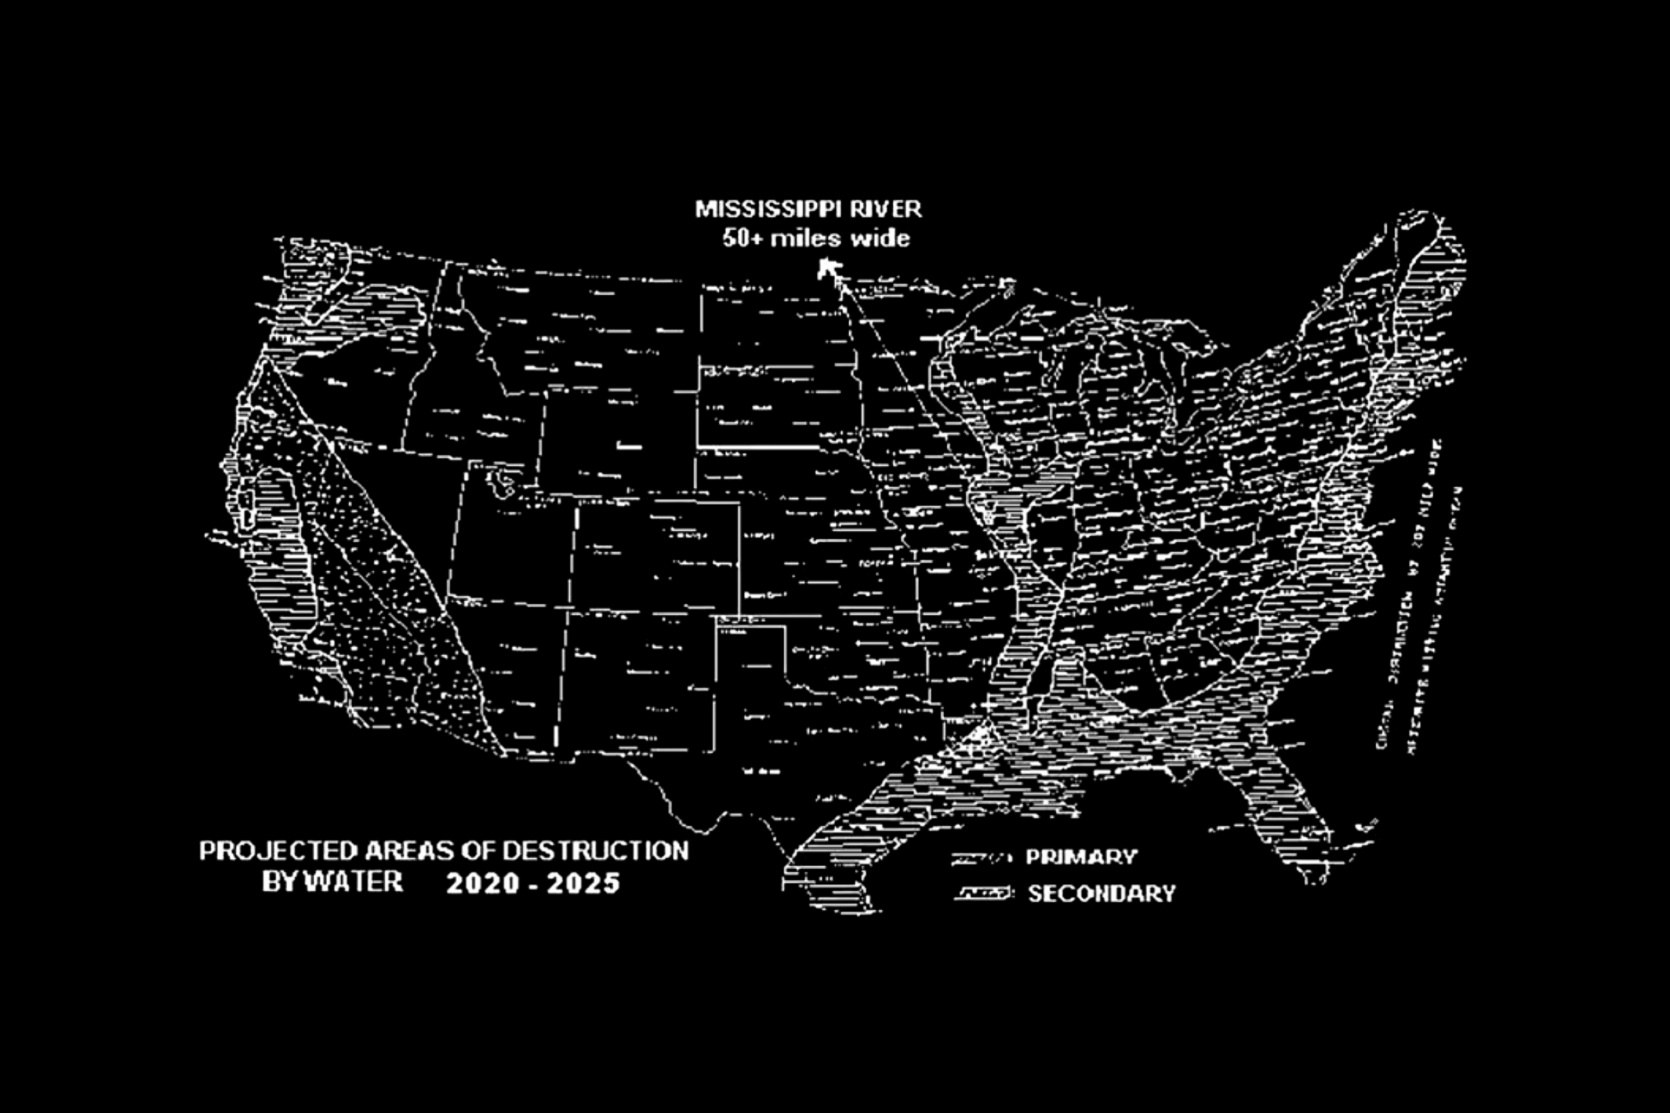 Al Bielek's Future map of the USA